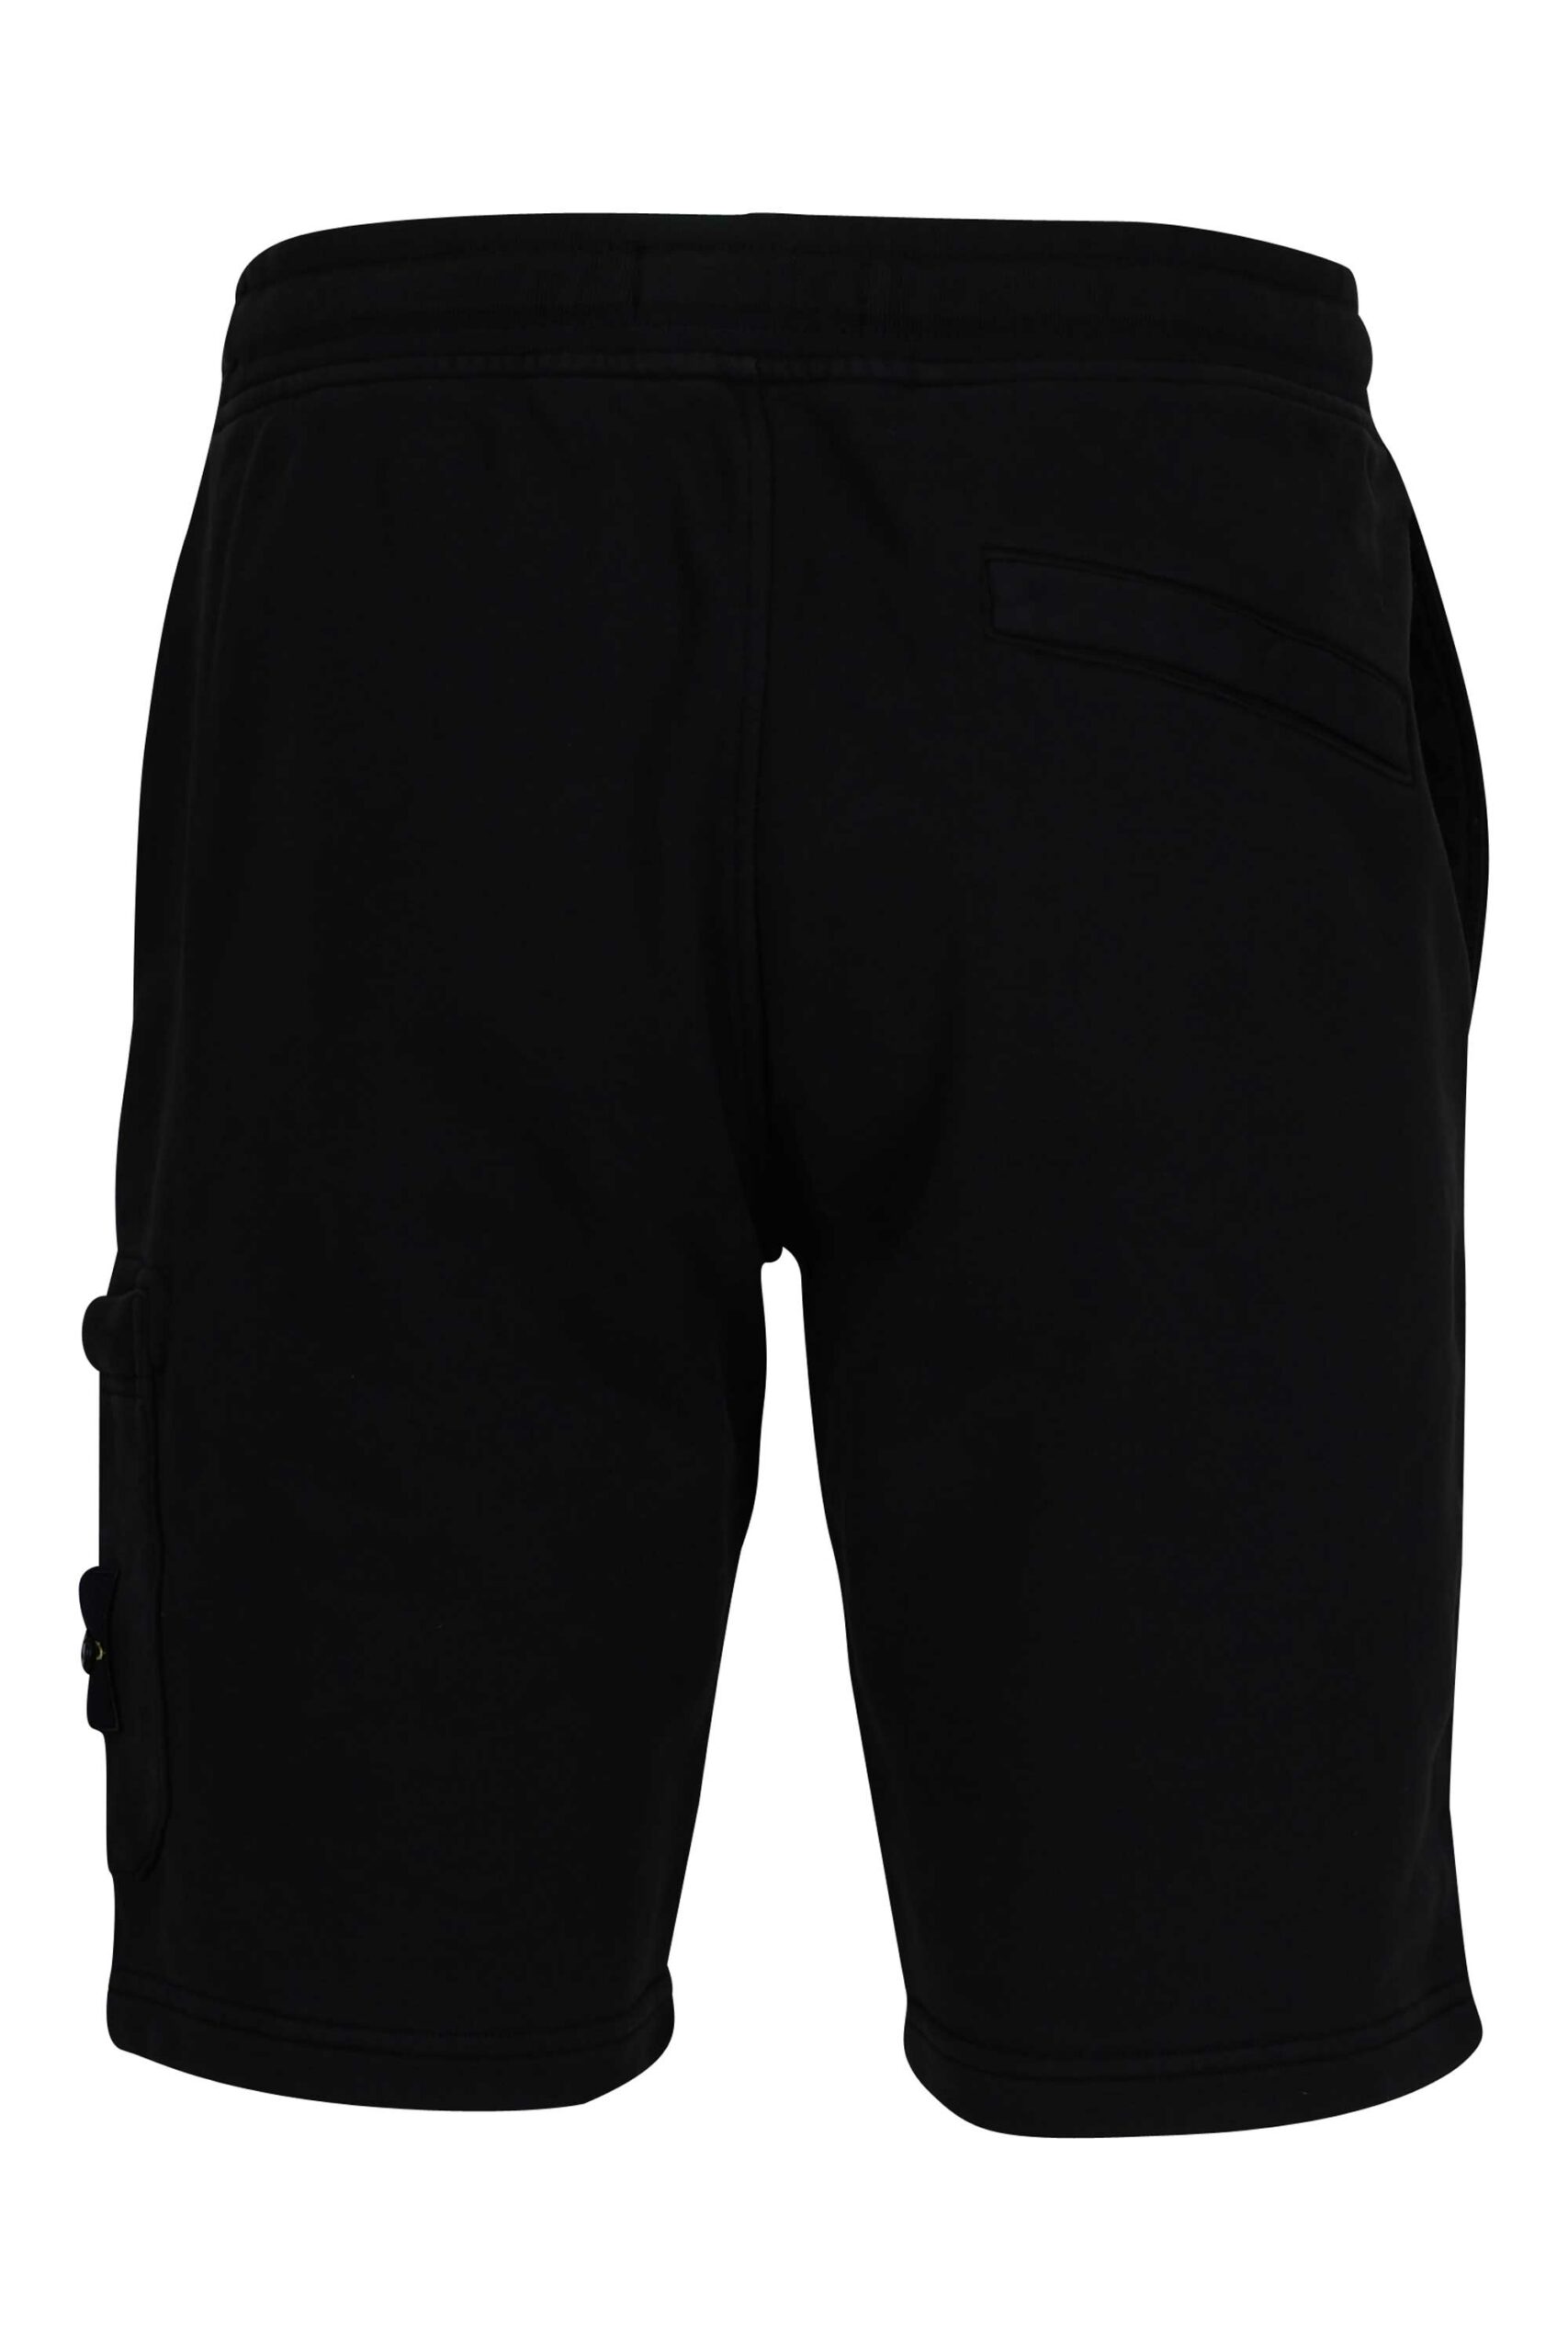 Stone Island - Pantalón de chándal negro con logo lateral parche - BLS  Fashion